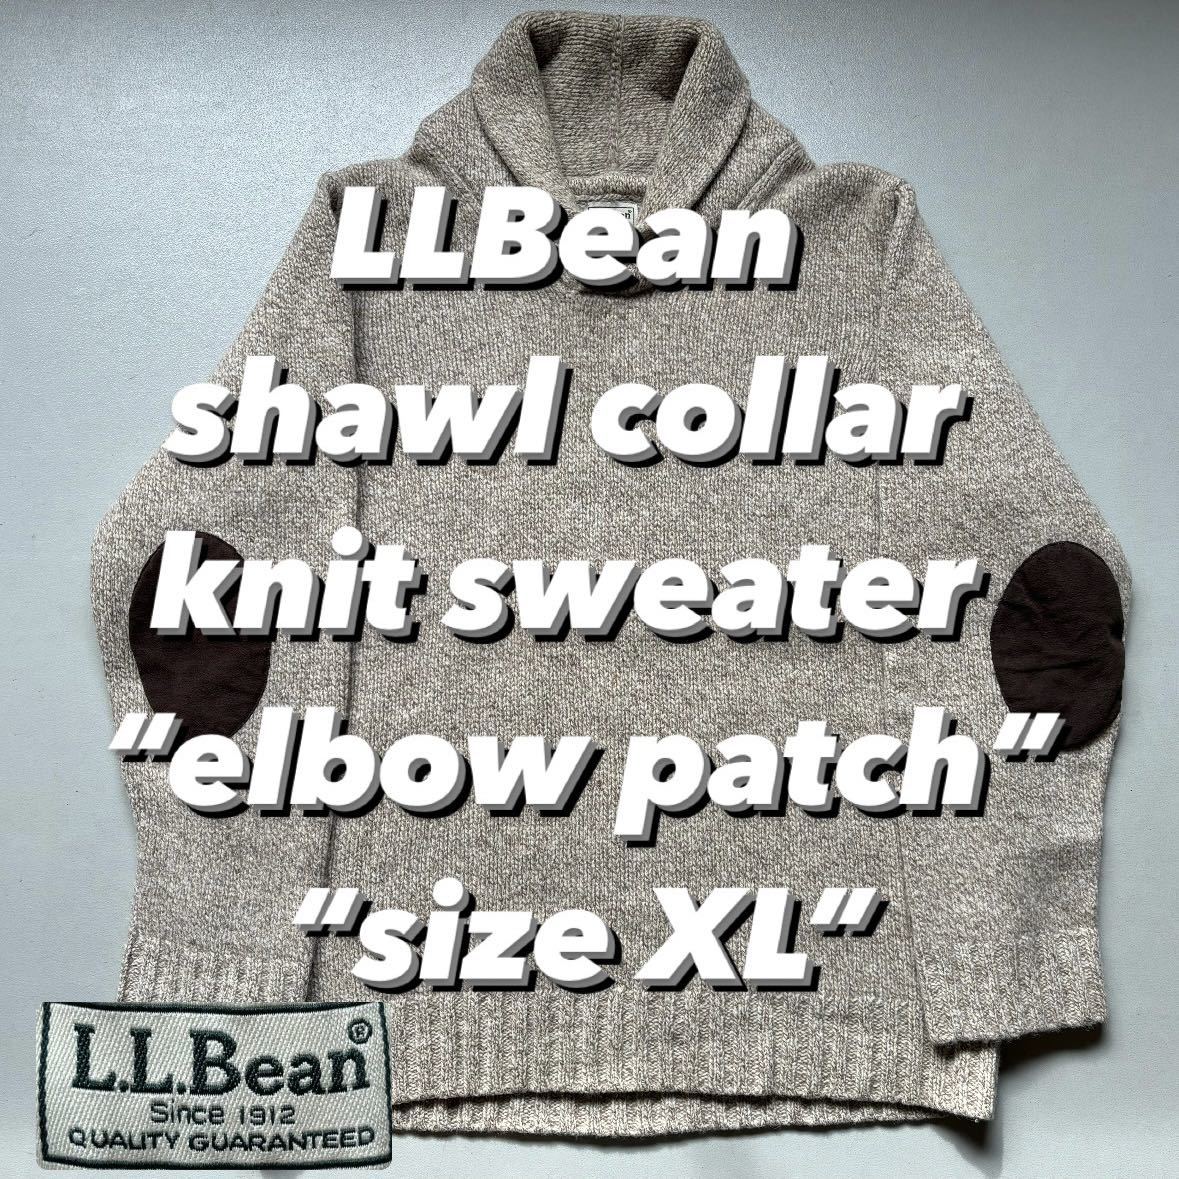 LLBean shawl collar knit sweater “elbow patch” “size XL” エルエルビーン ショールカラーニットセーター エルボーパッチ付き